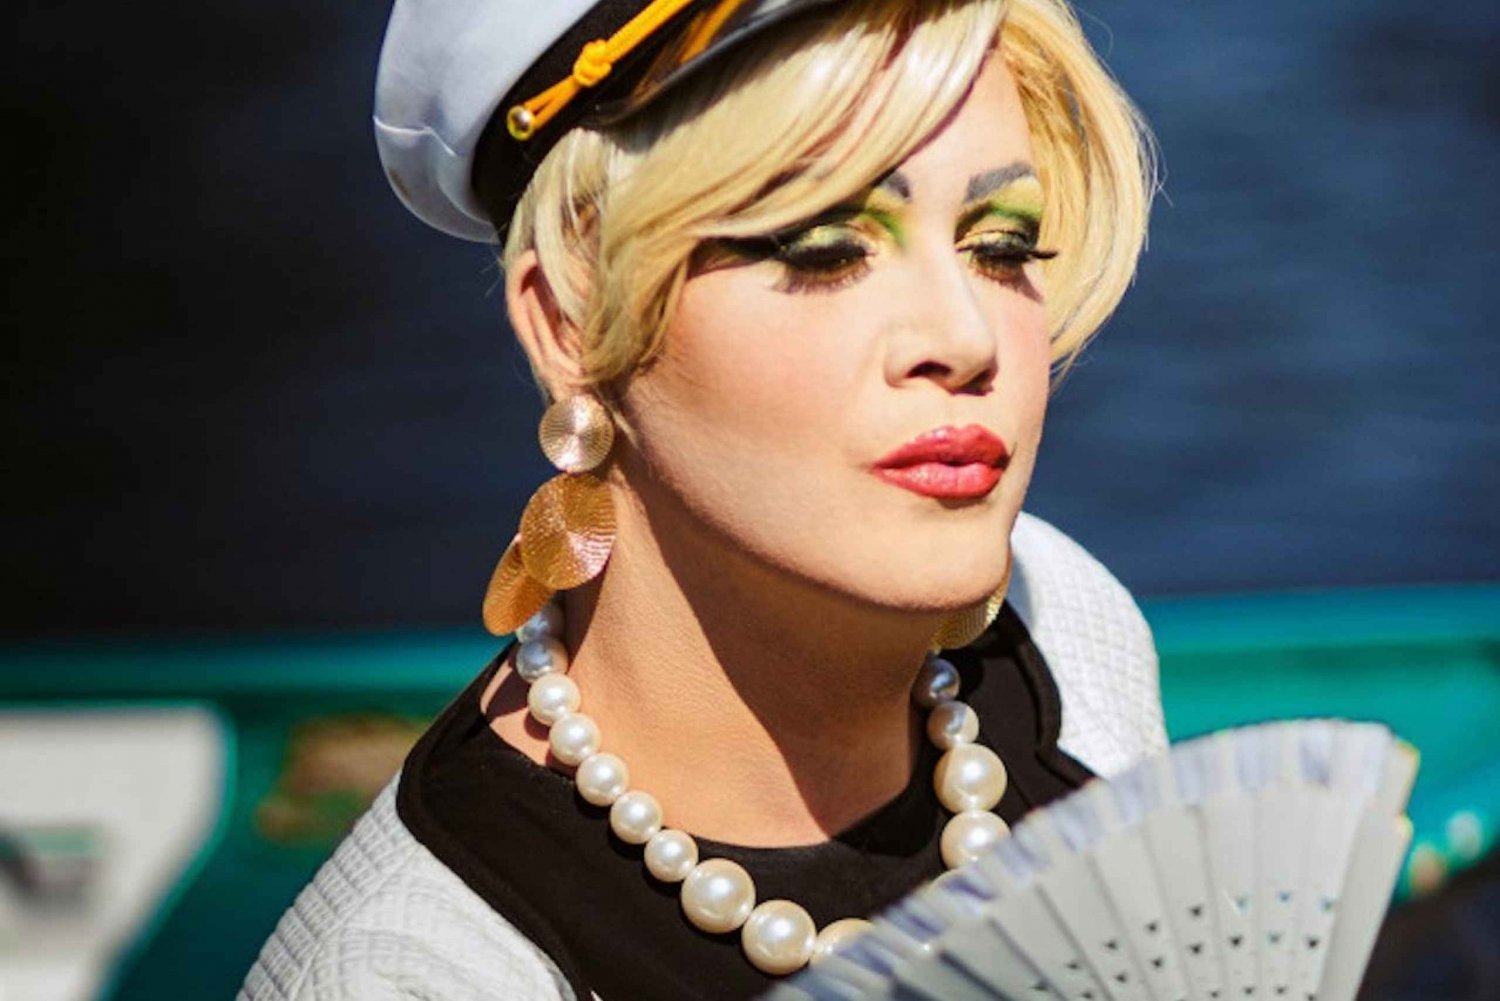 Berlín: ¡Audrey Ahoi! Crucero por el Spree con drag queen